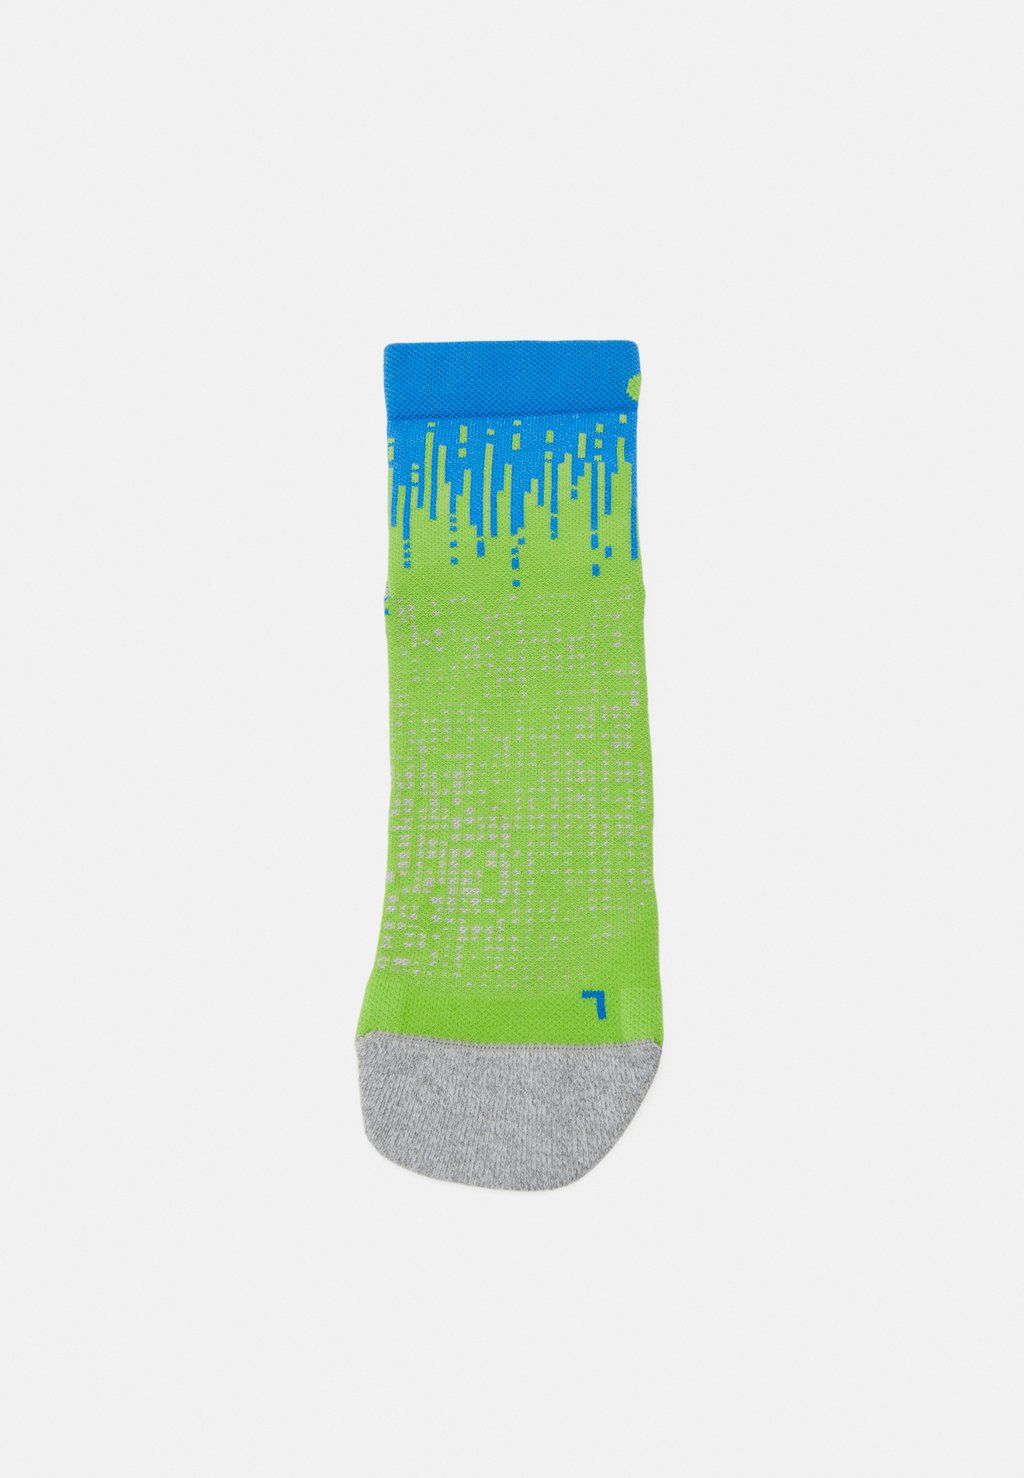 спортивные носки performance run quarter sock unisex asics бирюзовый Спортивные носки PERFORMANCE RUN QUARTER SOCK UNISEX ASICS, неоновый зеленый